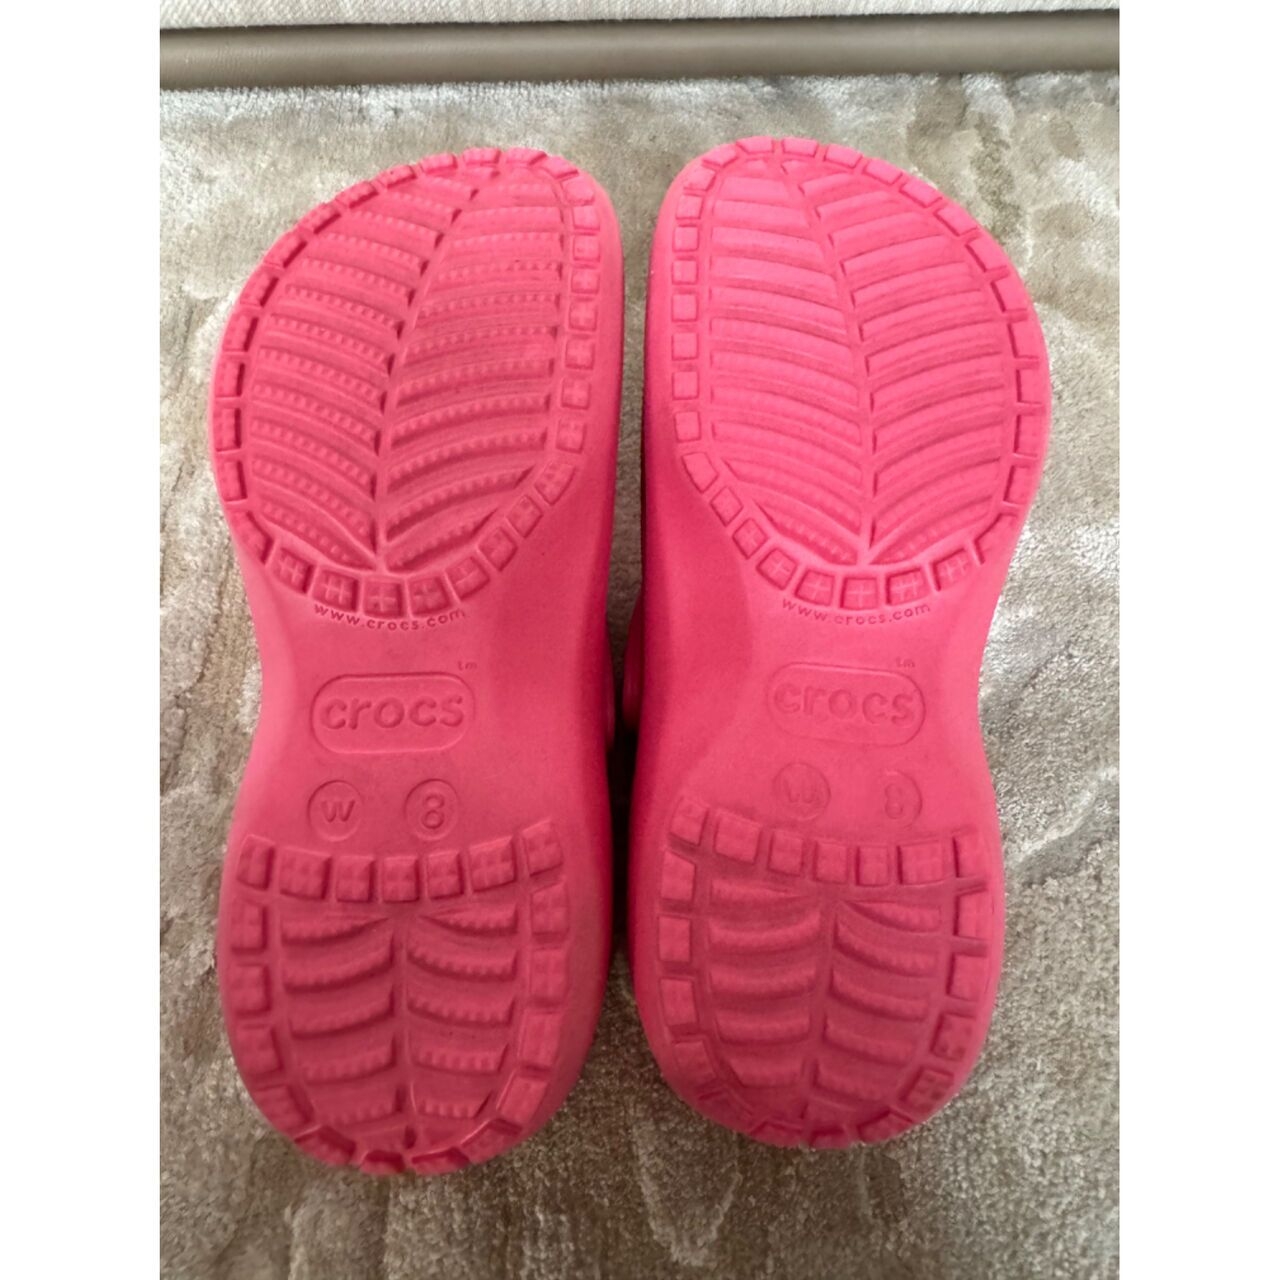 Crocs Pink Sandals